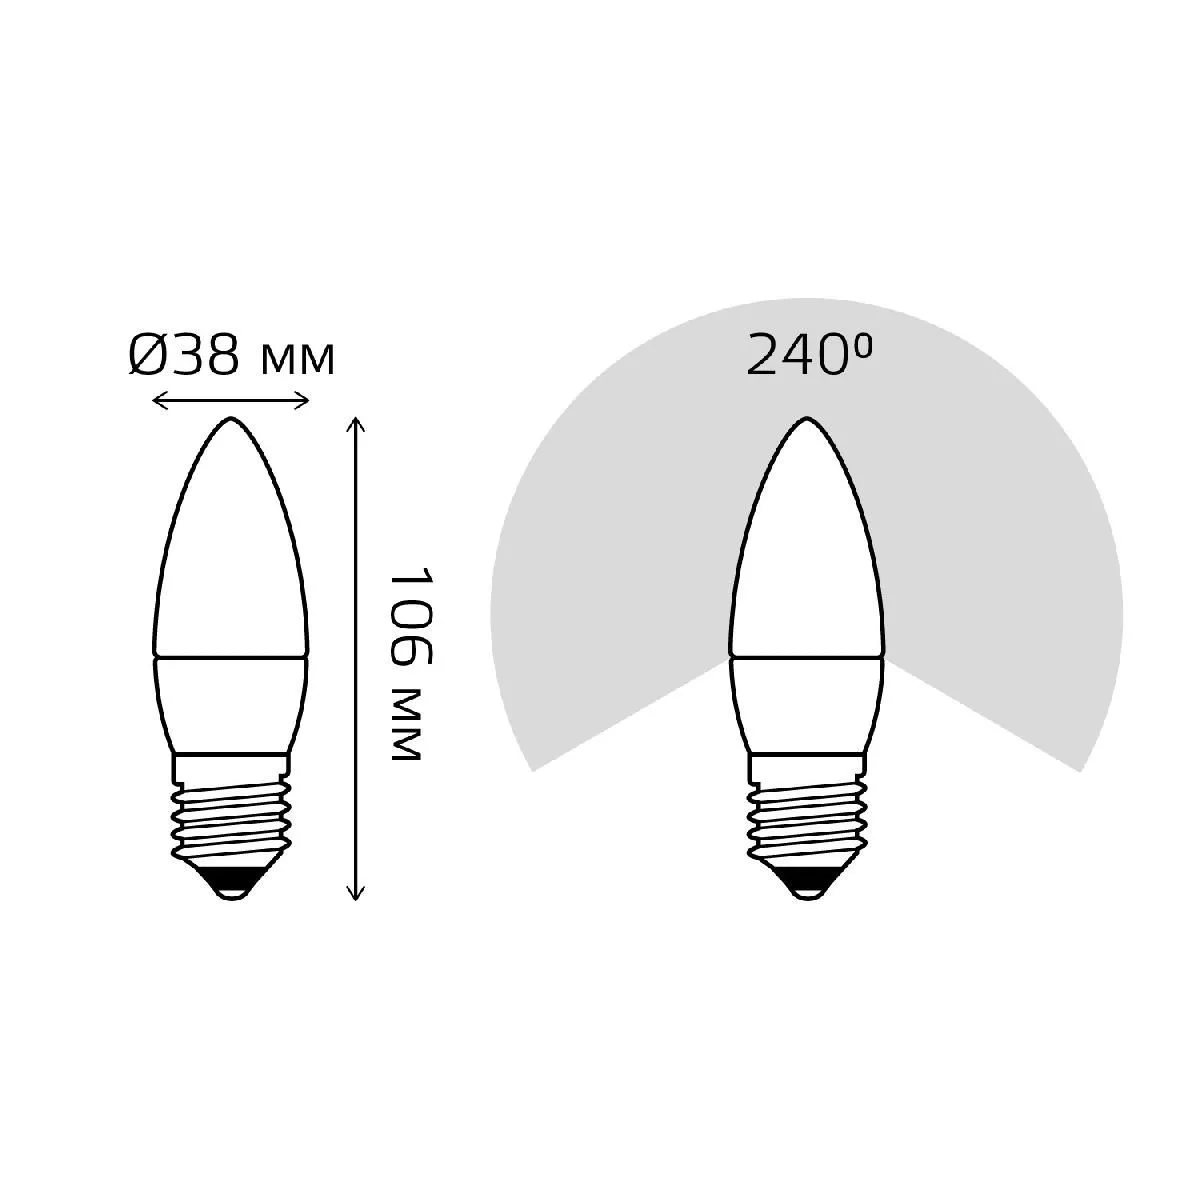 Упаковка 10 штук Лампа Gauss Elementary Свеча 10W 750lm 3000K E27 LED 1/10/100